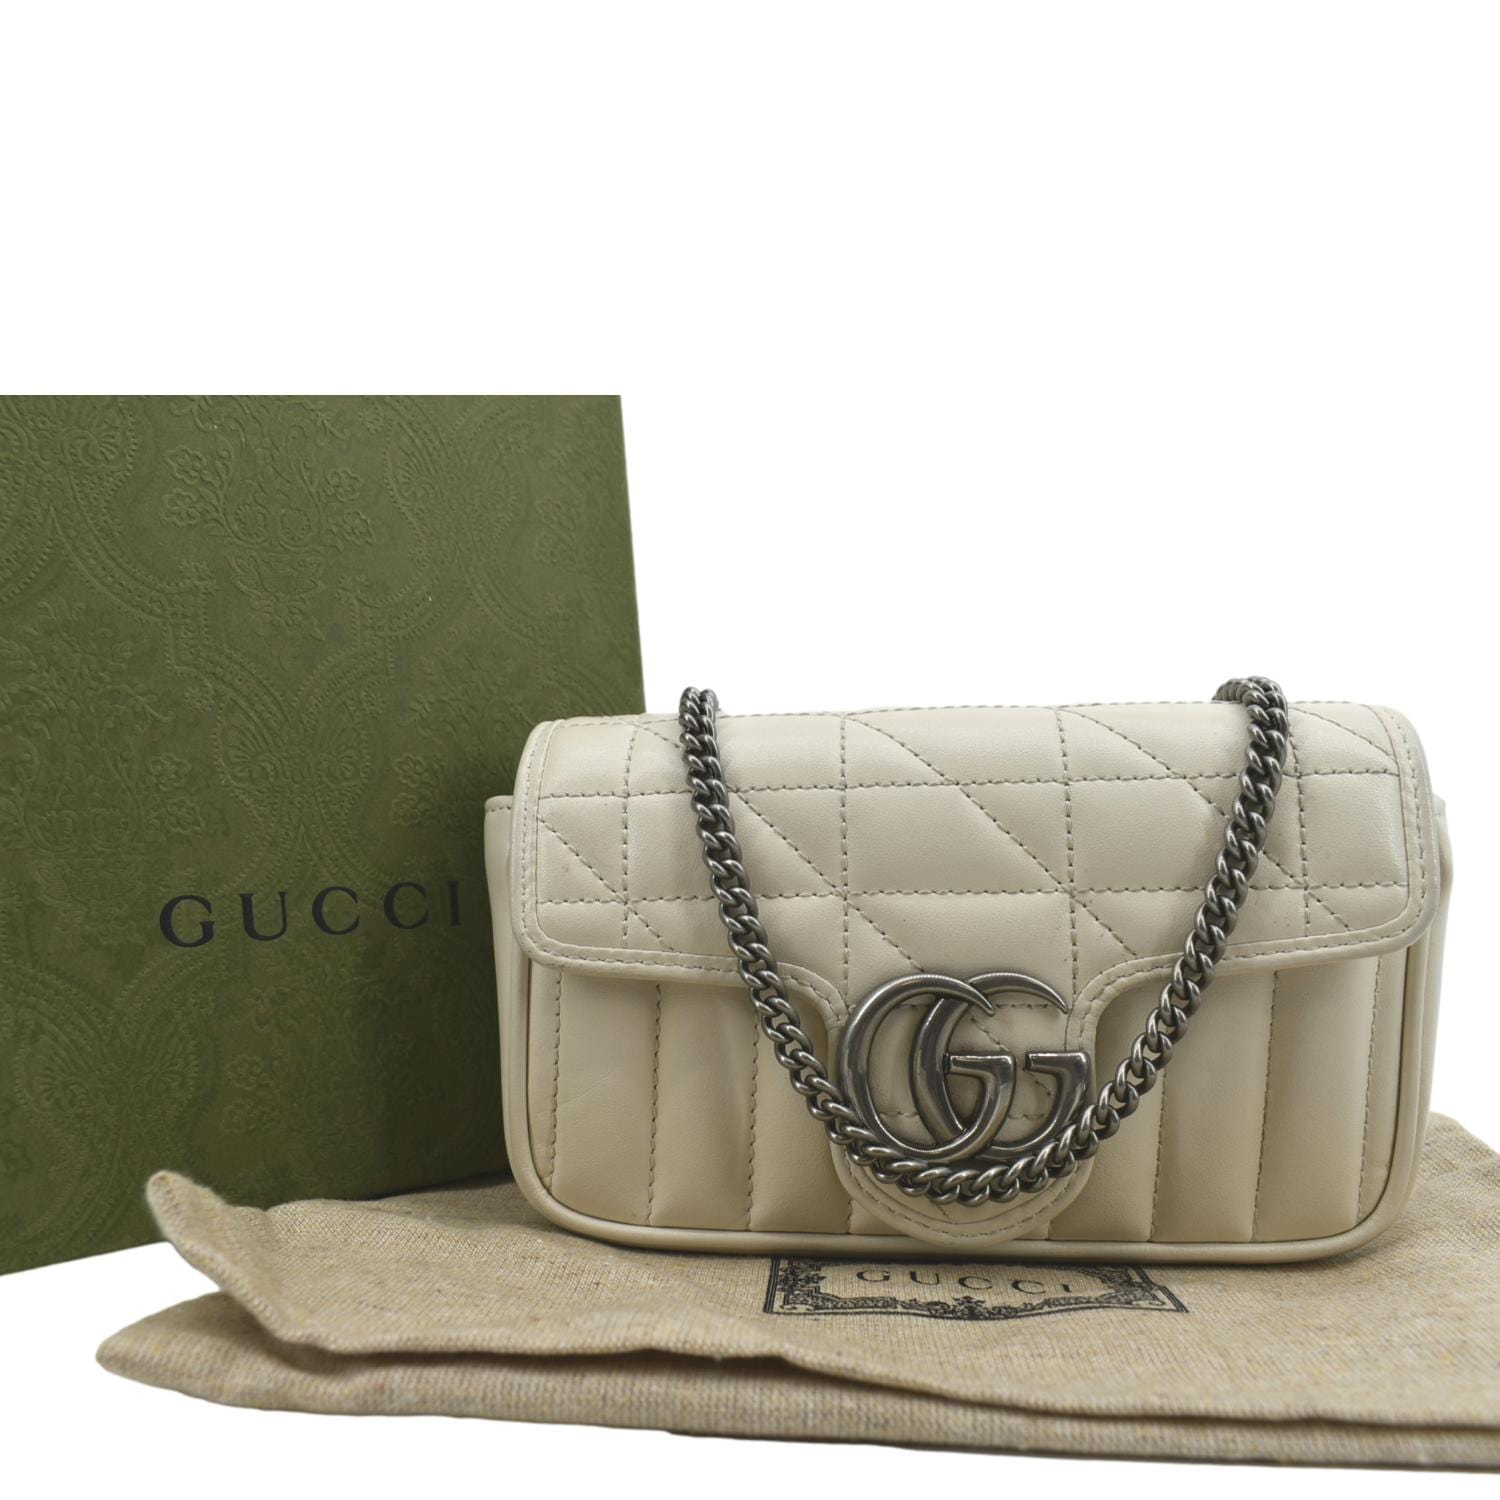 GG Marmont Super Mini Shoulder Bag in White - Gucci